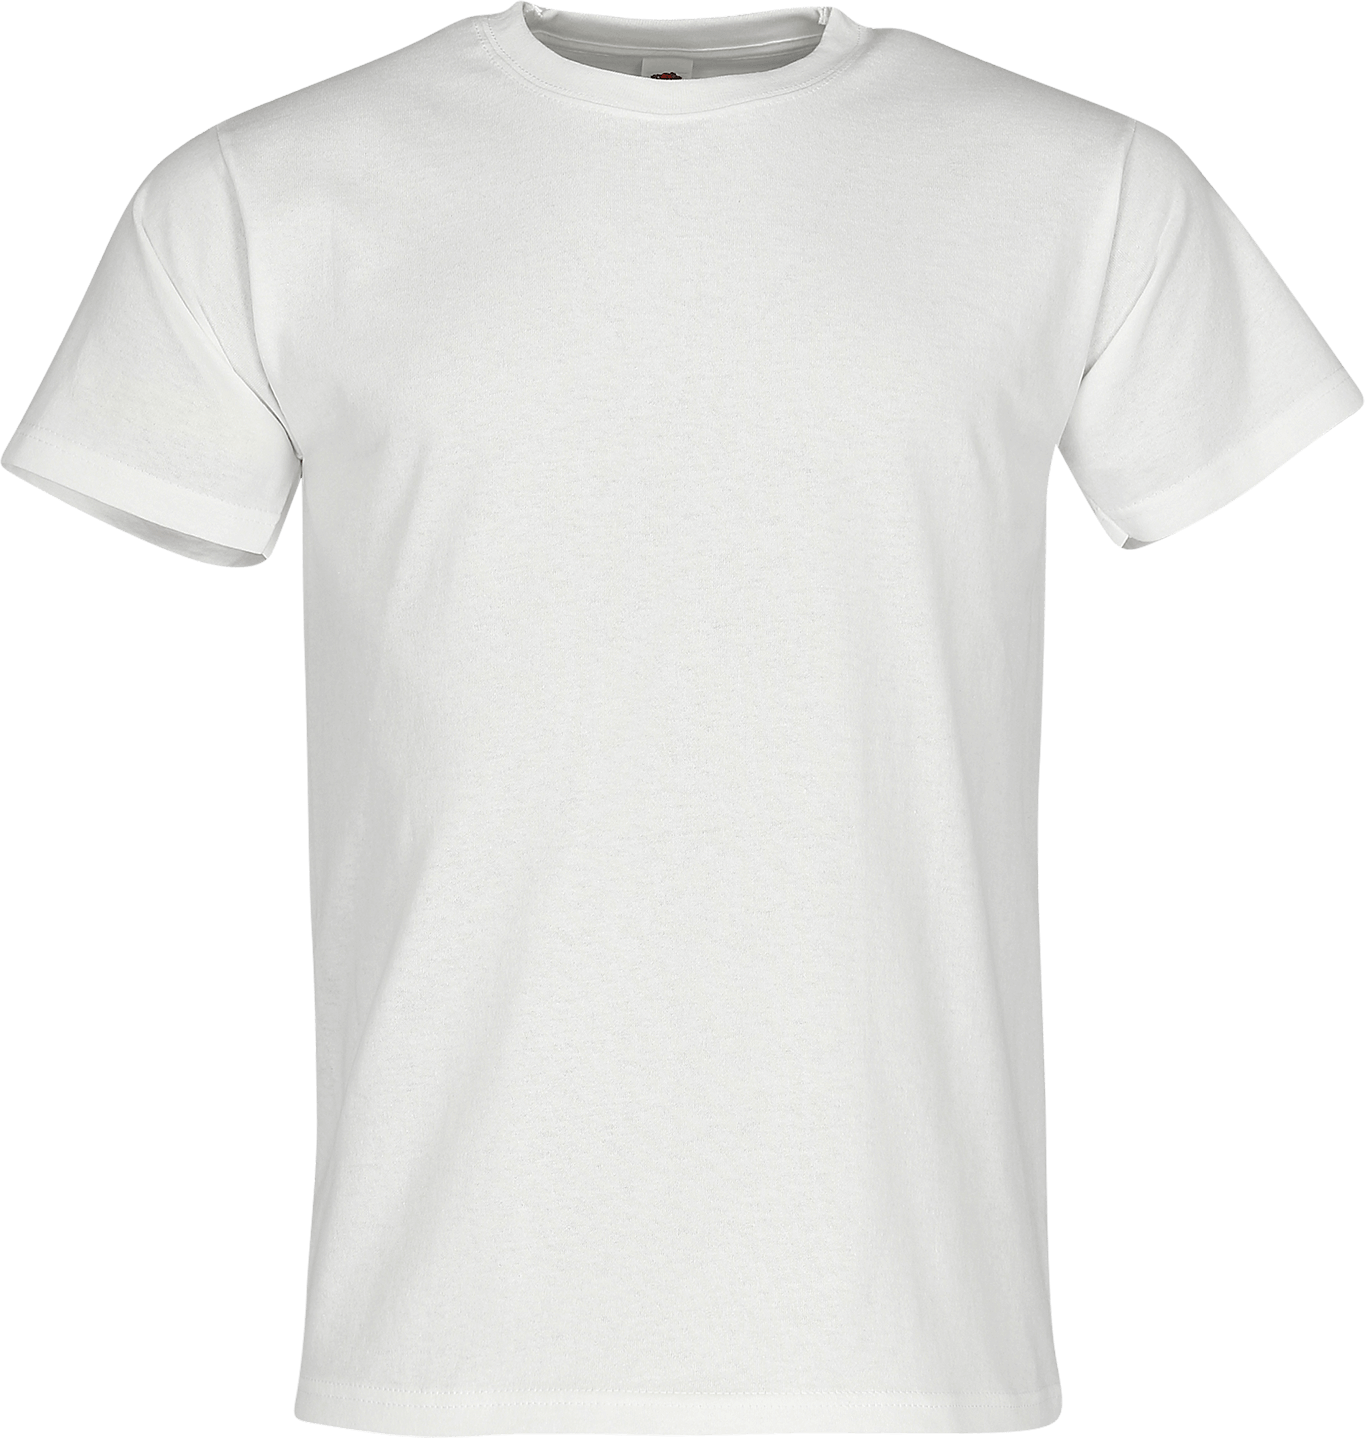 HEAVY T - Herren T-Shirt mit Rundhalsausschnitt, weiß, XL